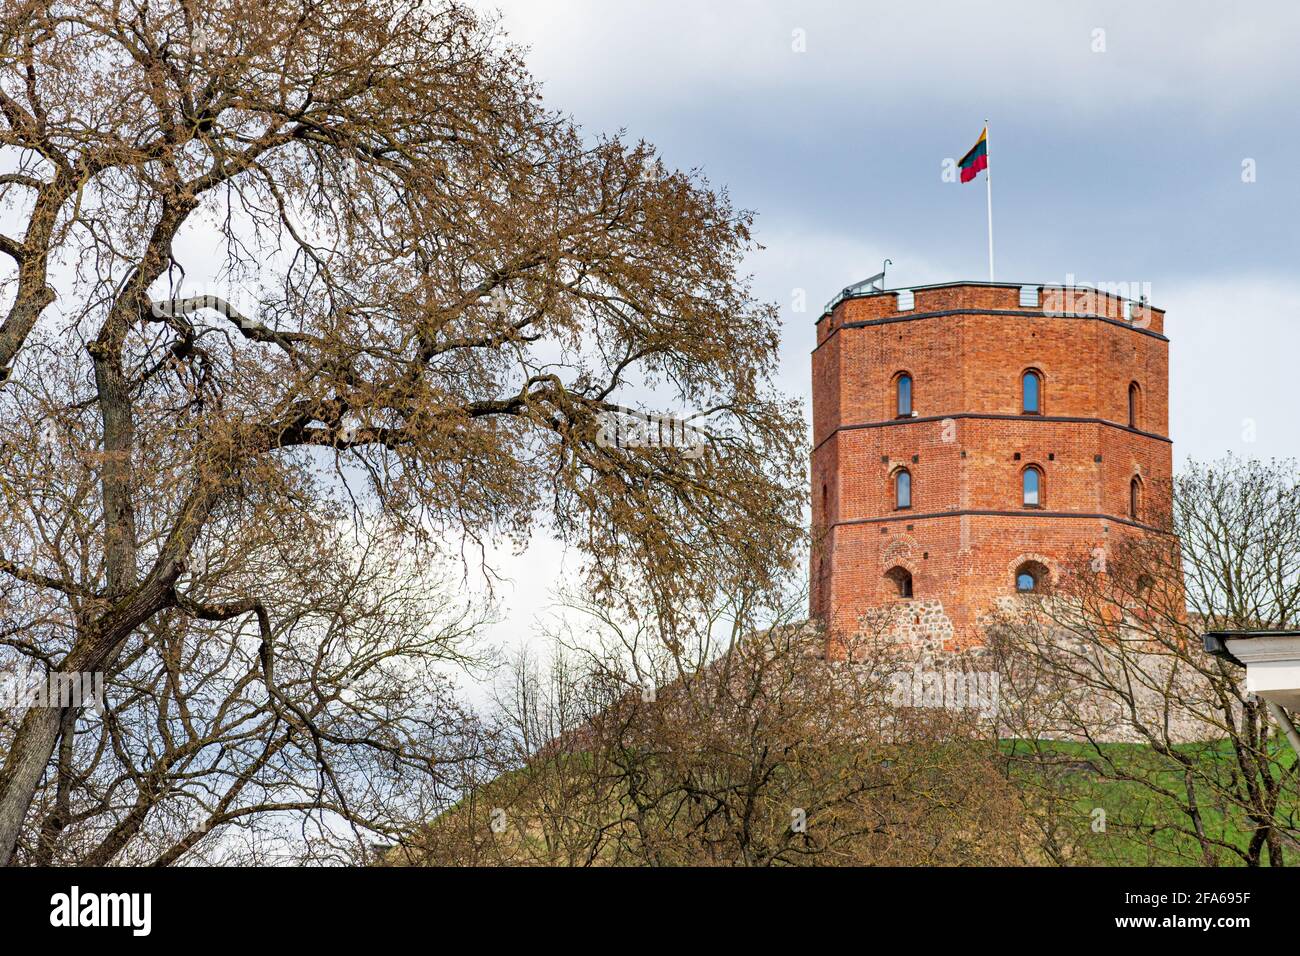 Gediminas Turm oder Burg, der verbleibende Teil der oberen mittelalterlichen Burg in Vilnius, Litauen mit litauischer Flagge Stockfoto